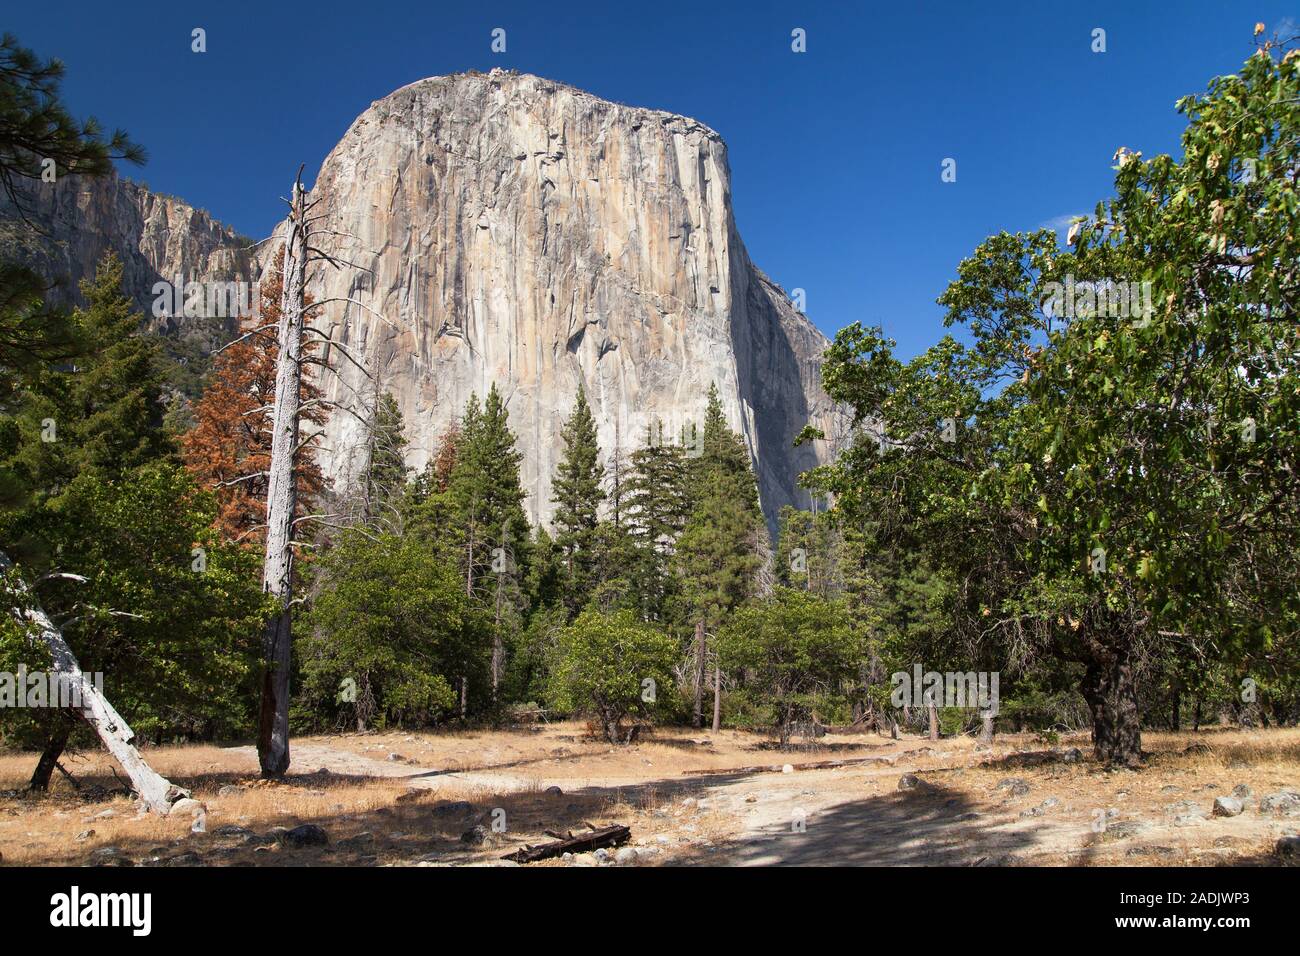 El Capitan vom Tal gesehen, Yosemite National Park, Kalifornien, USA. Stockfoto